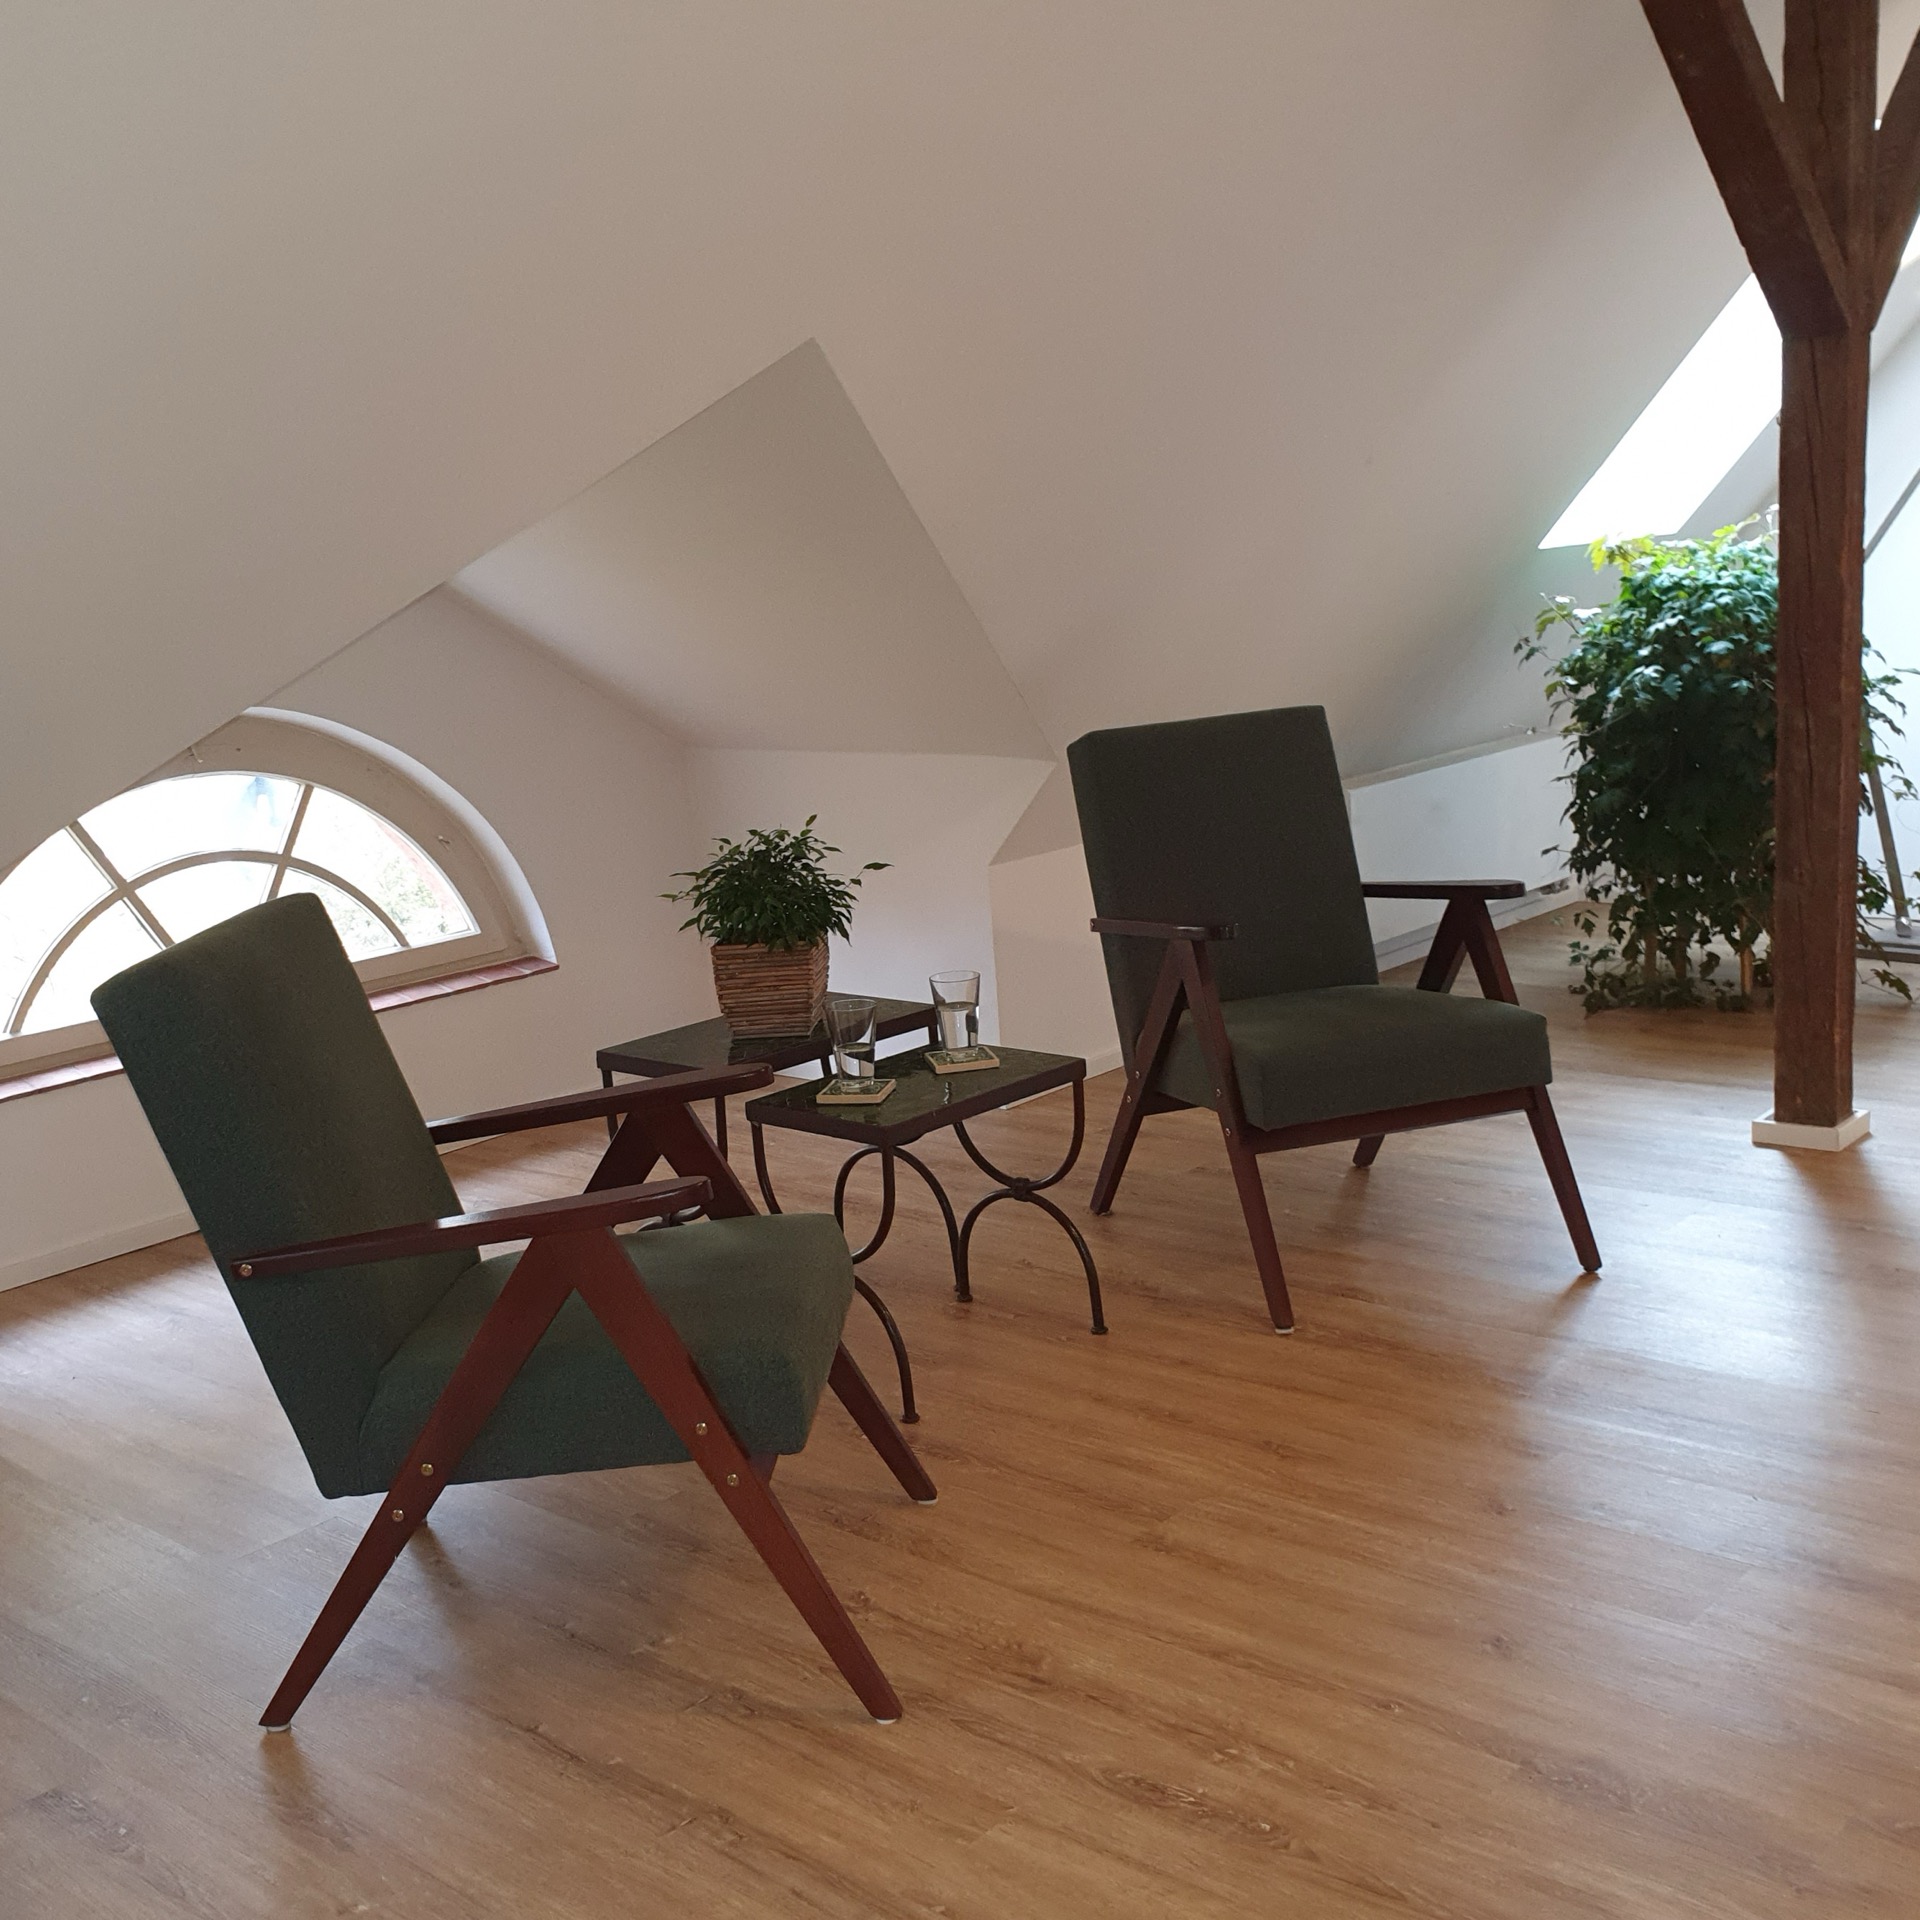 Zwei Sessel, zwei Tischchen. Pflanzen. Ein Raum mit Dachschräge und hellem Boden